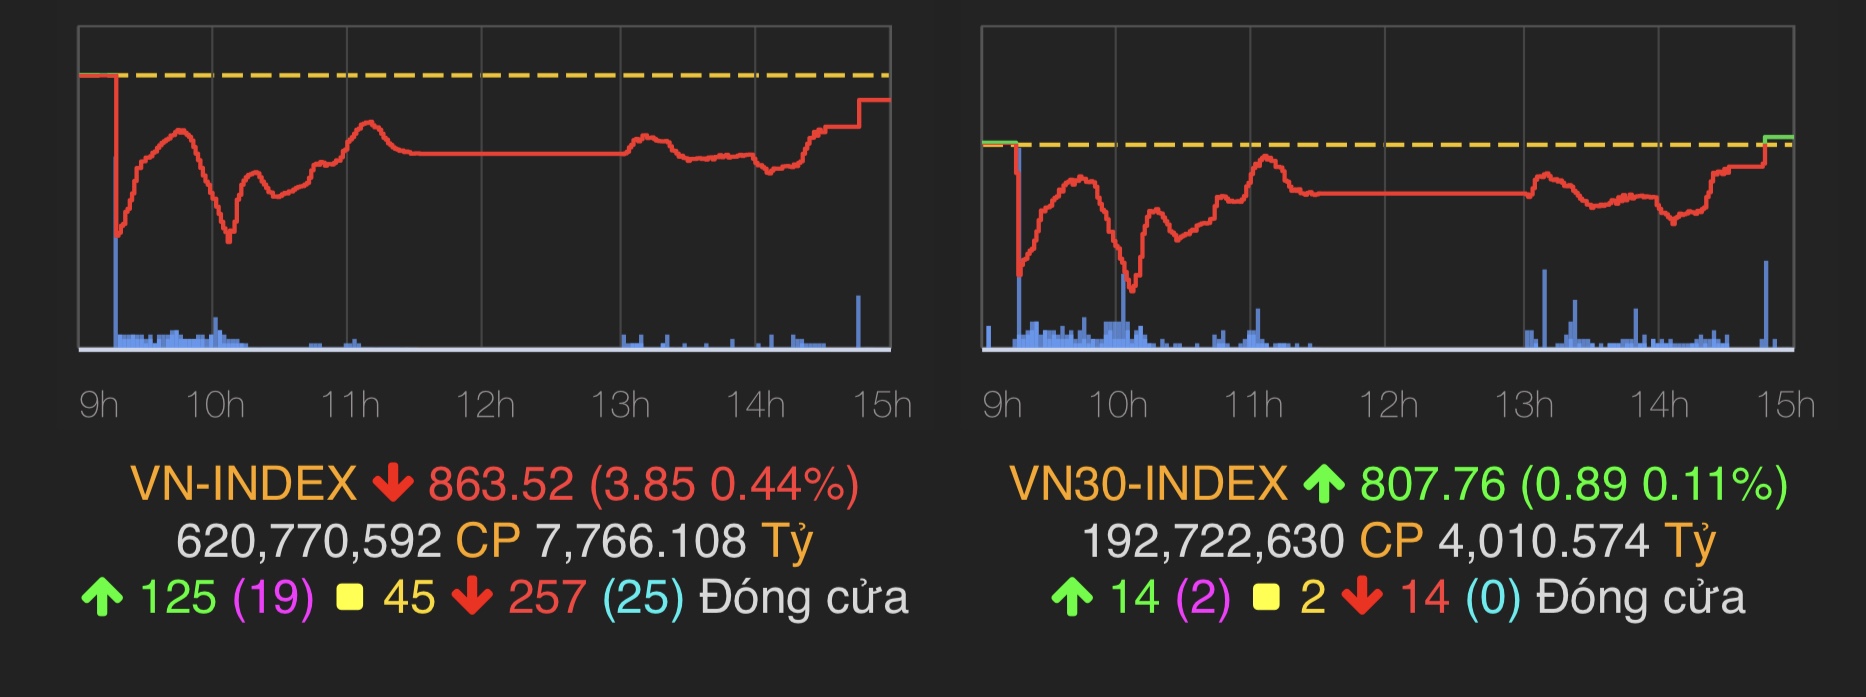 VN-Index chỉ còn giảm 3,85 điểm (0,44%) xuống 863,52 điểm.